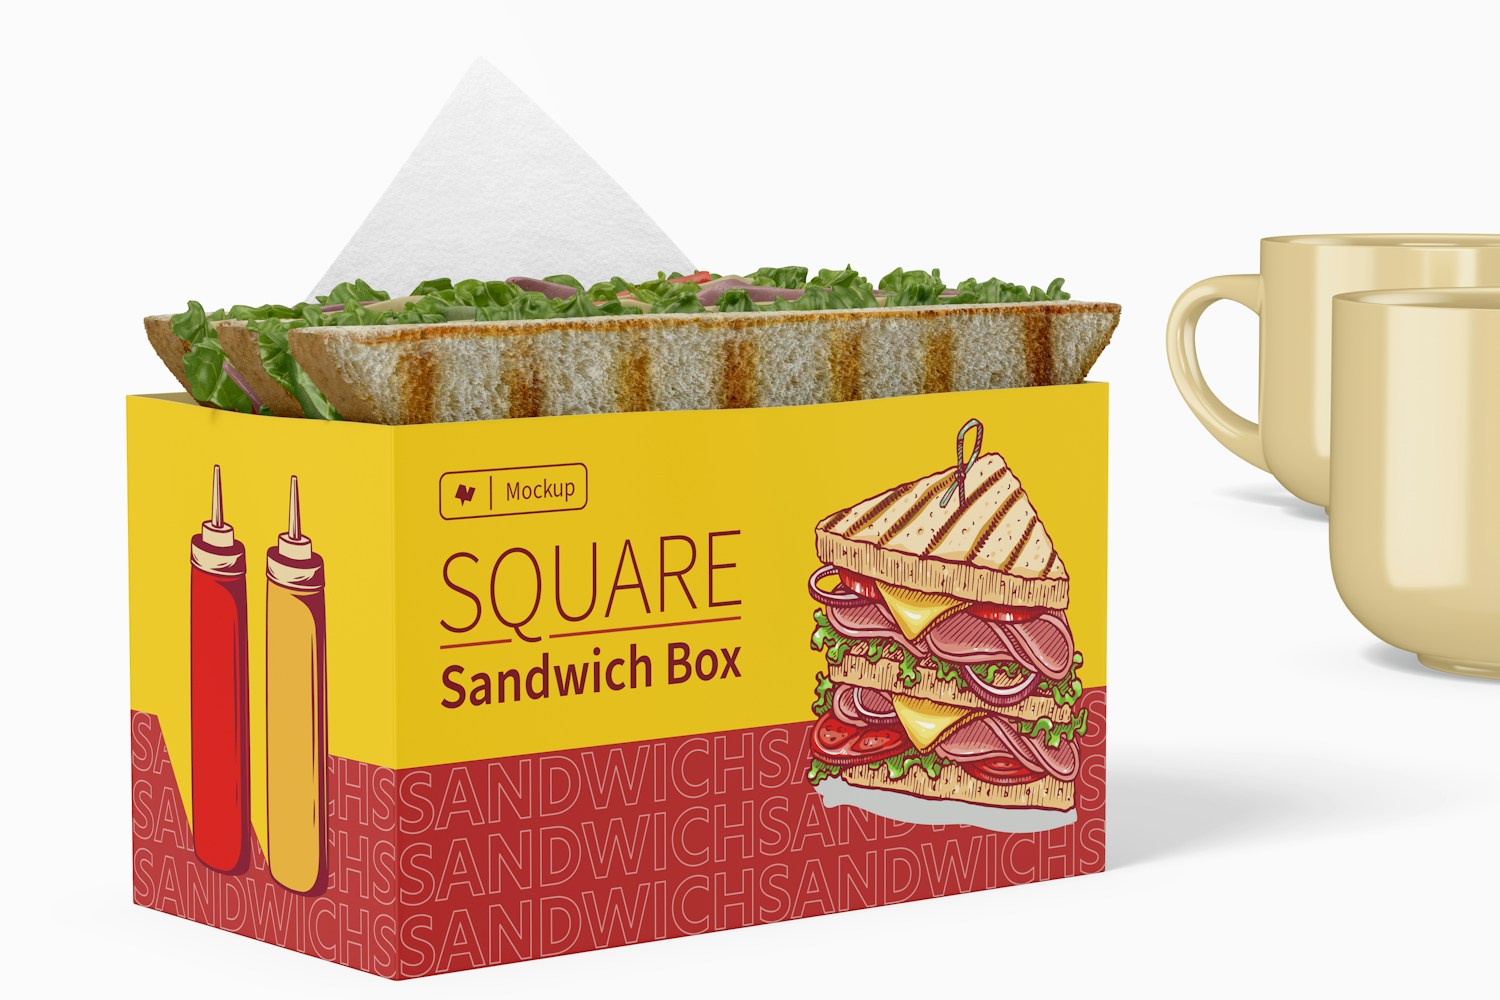 Square Sandwich Box Mockup